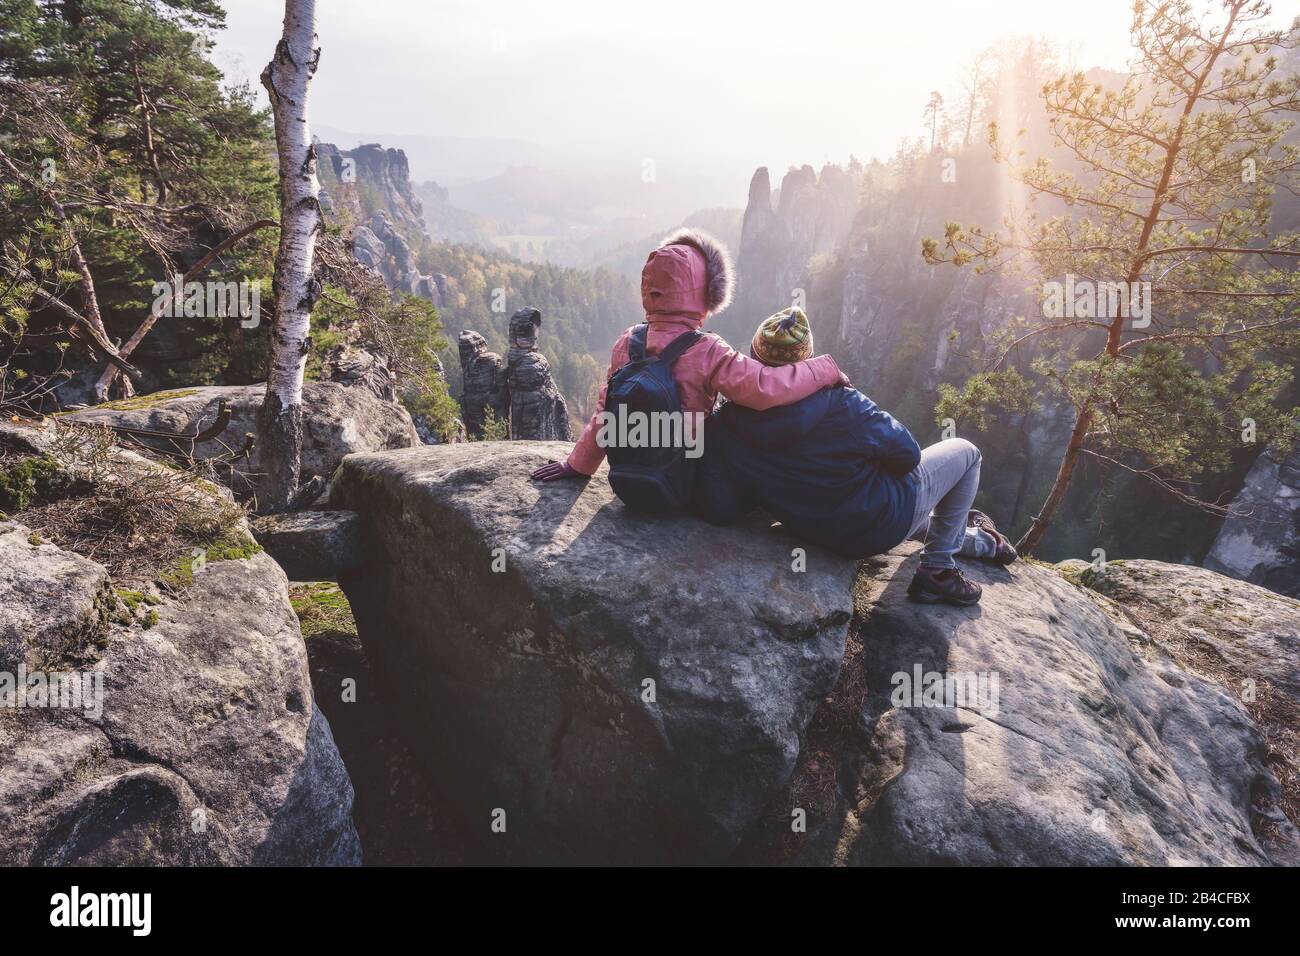 Junges Paar in winterlicher Kleidung mit Rucksäcken, die nach Wanderung auf einem Kalksteinfelsen sitzend die Ansicht der Landschaft genießt, Reise-li Foto Stock